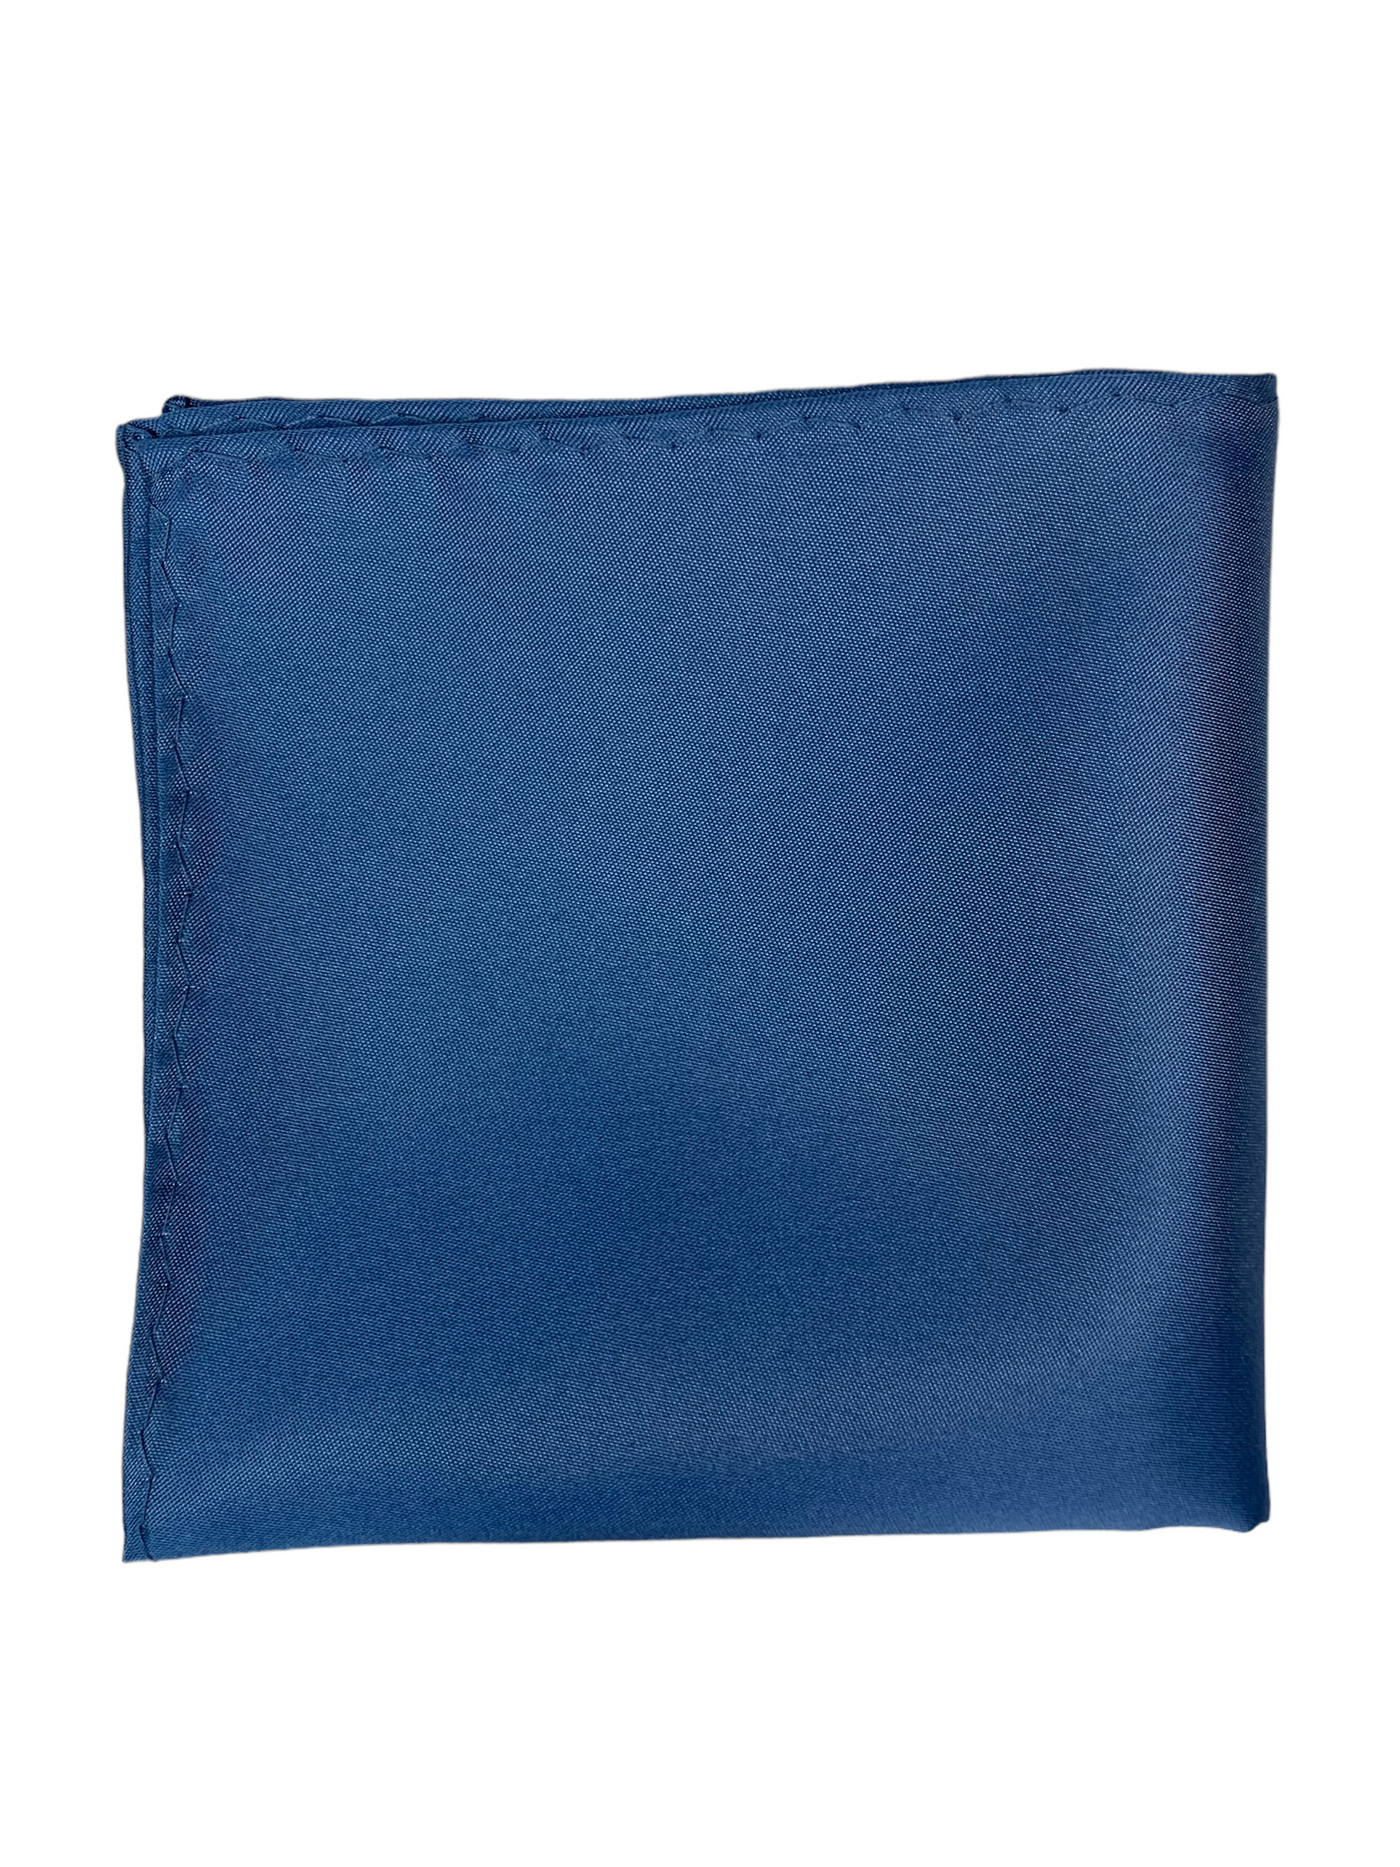 Mouchoir de poche satiné bleu poudre